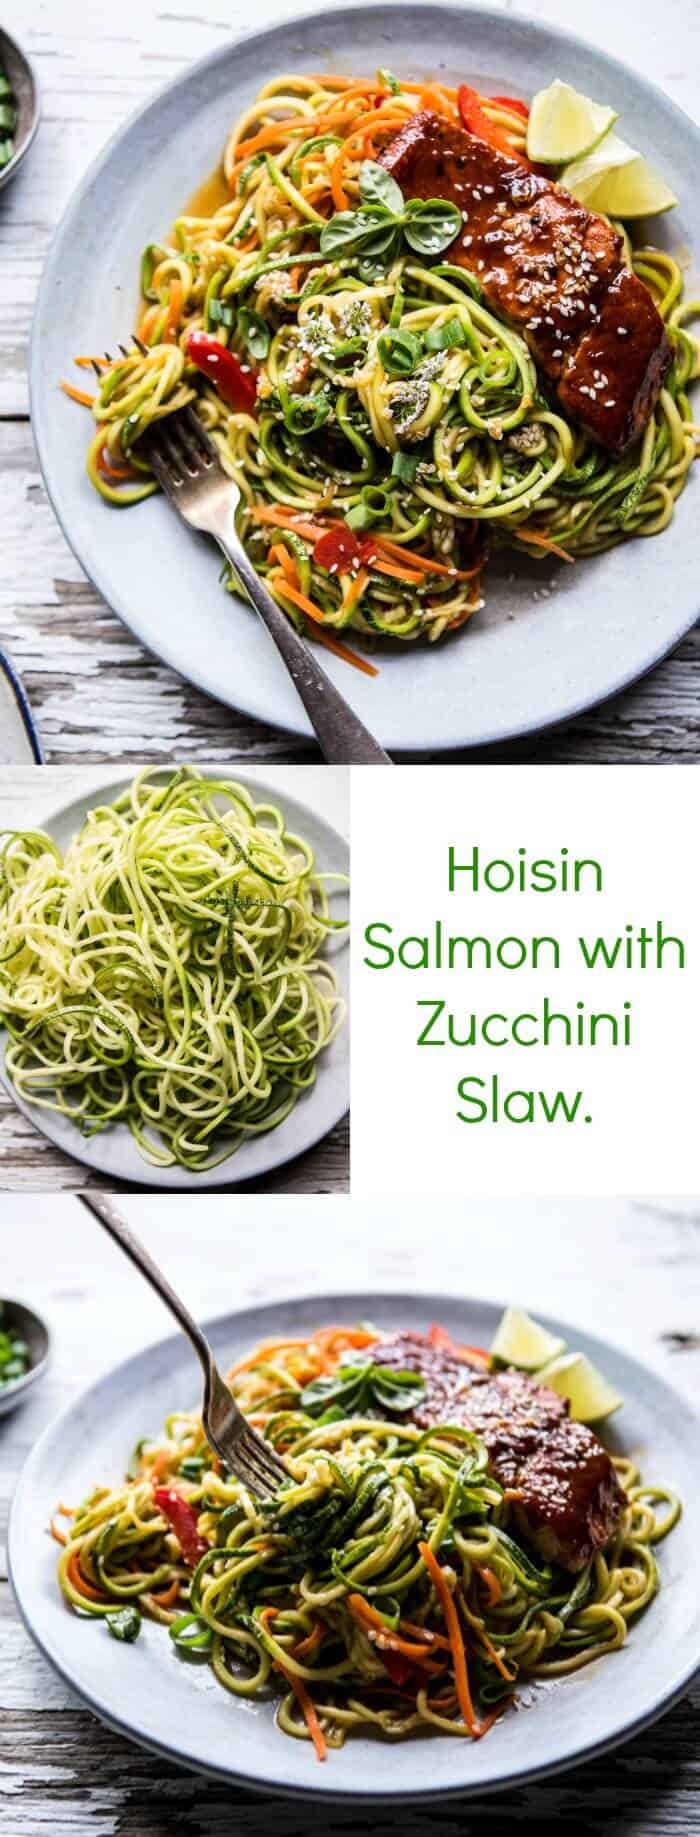 Hoisin Salmon with Zucchini Slaw | halfbakedharvest.com @hbharvest